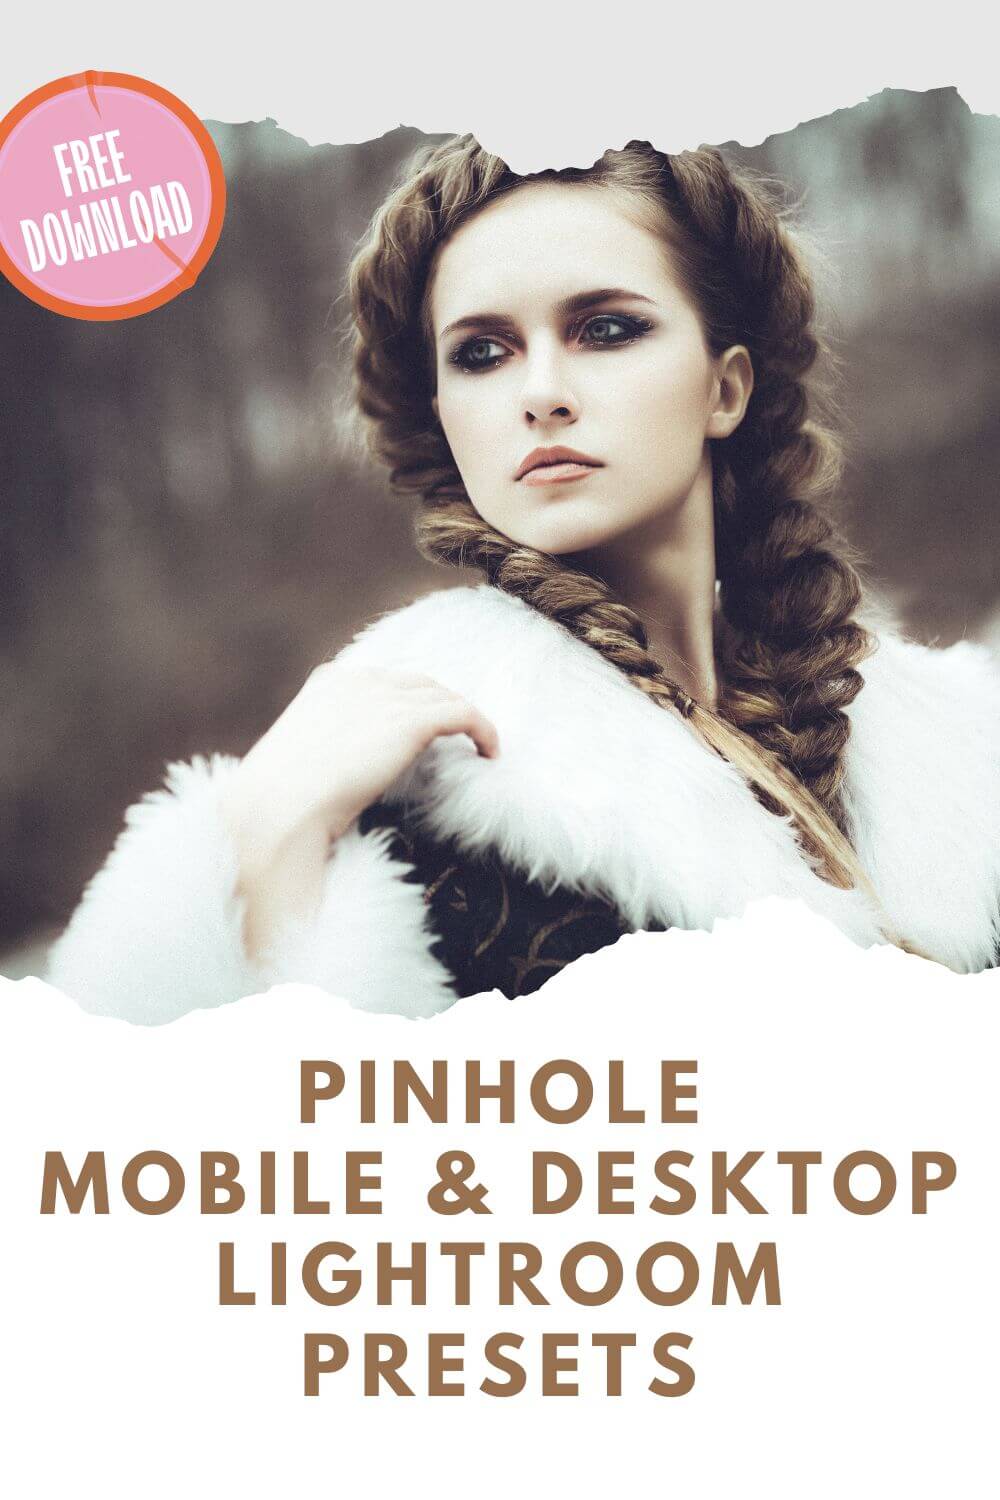 Pinhole Mobile & Desktop Lightroom Presets Pinterest